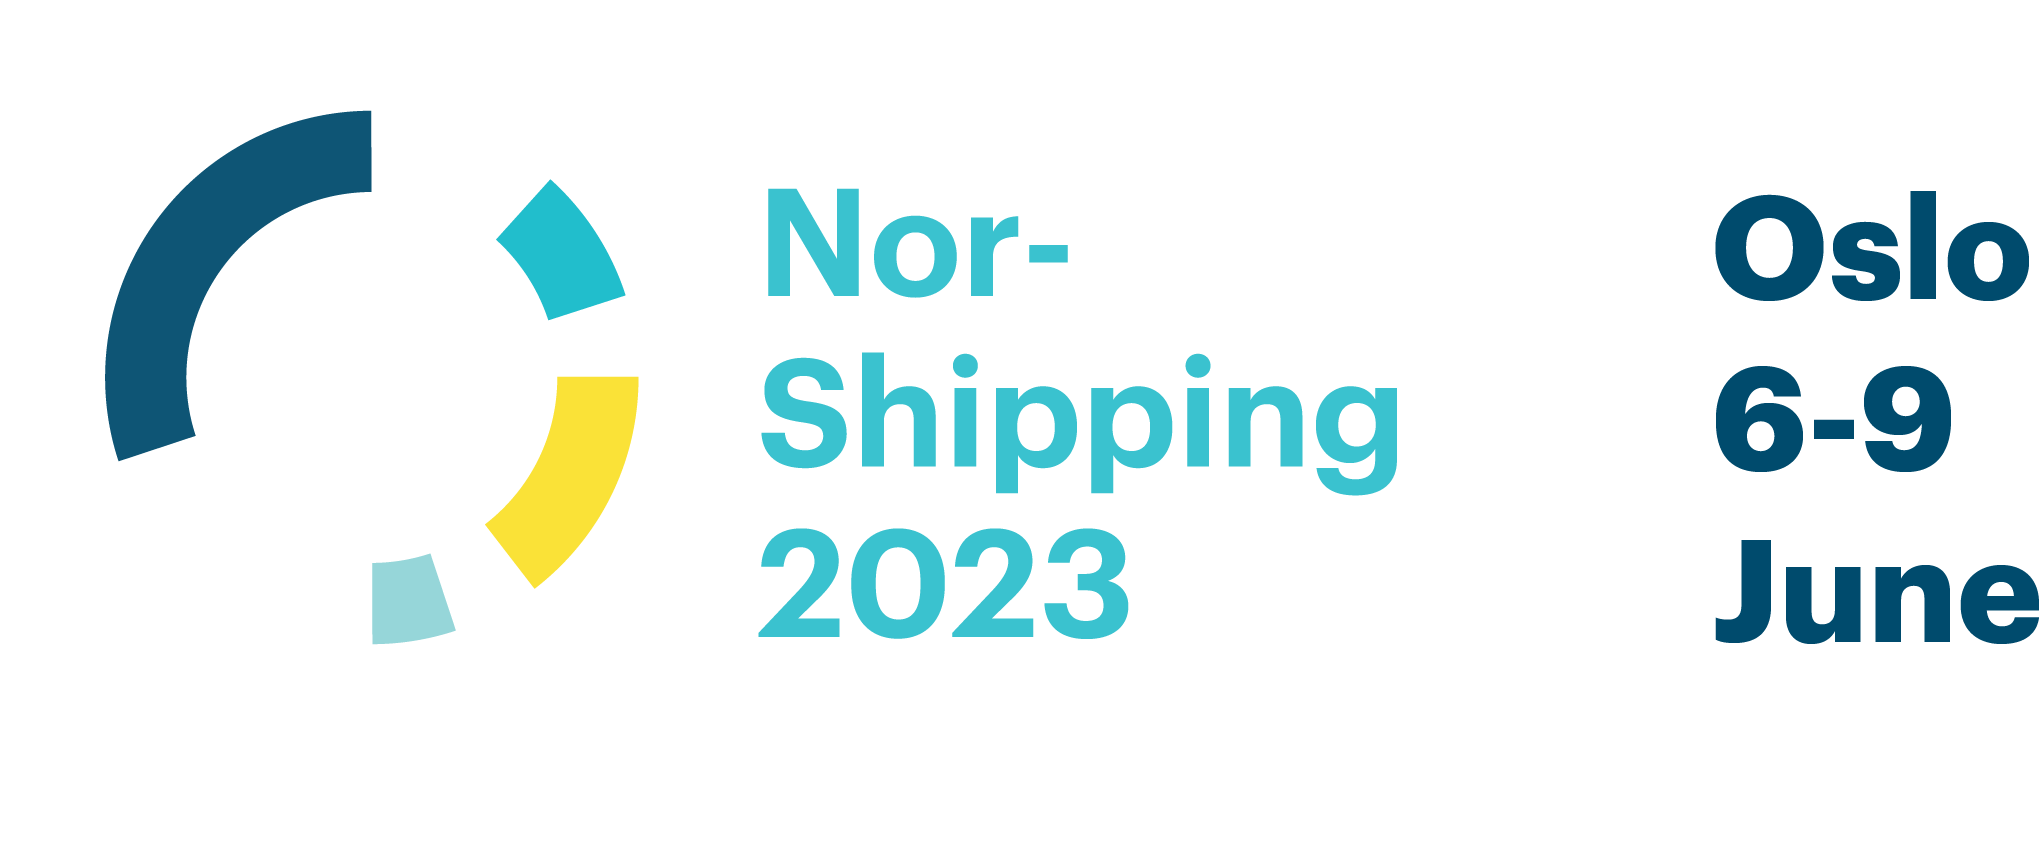 Nor-Shippin 2023 logo